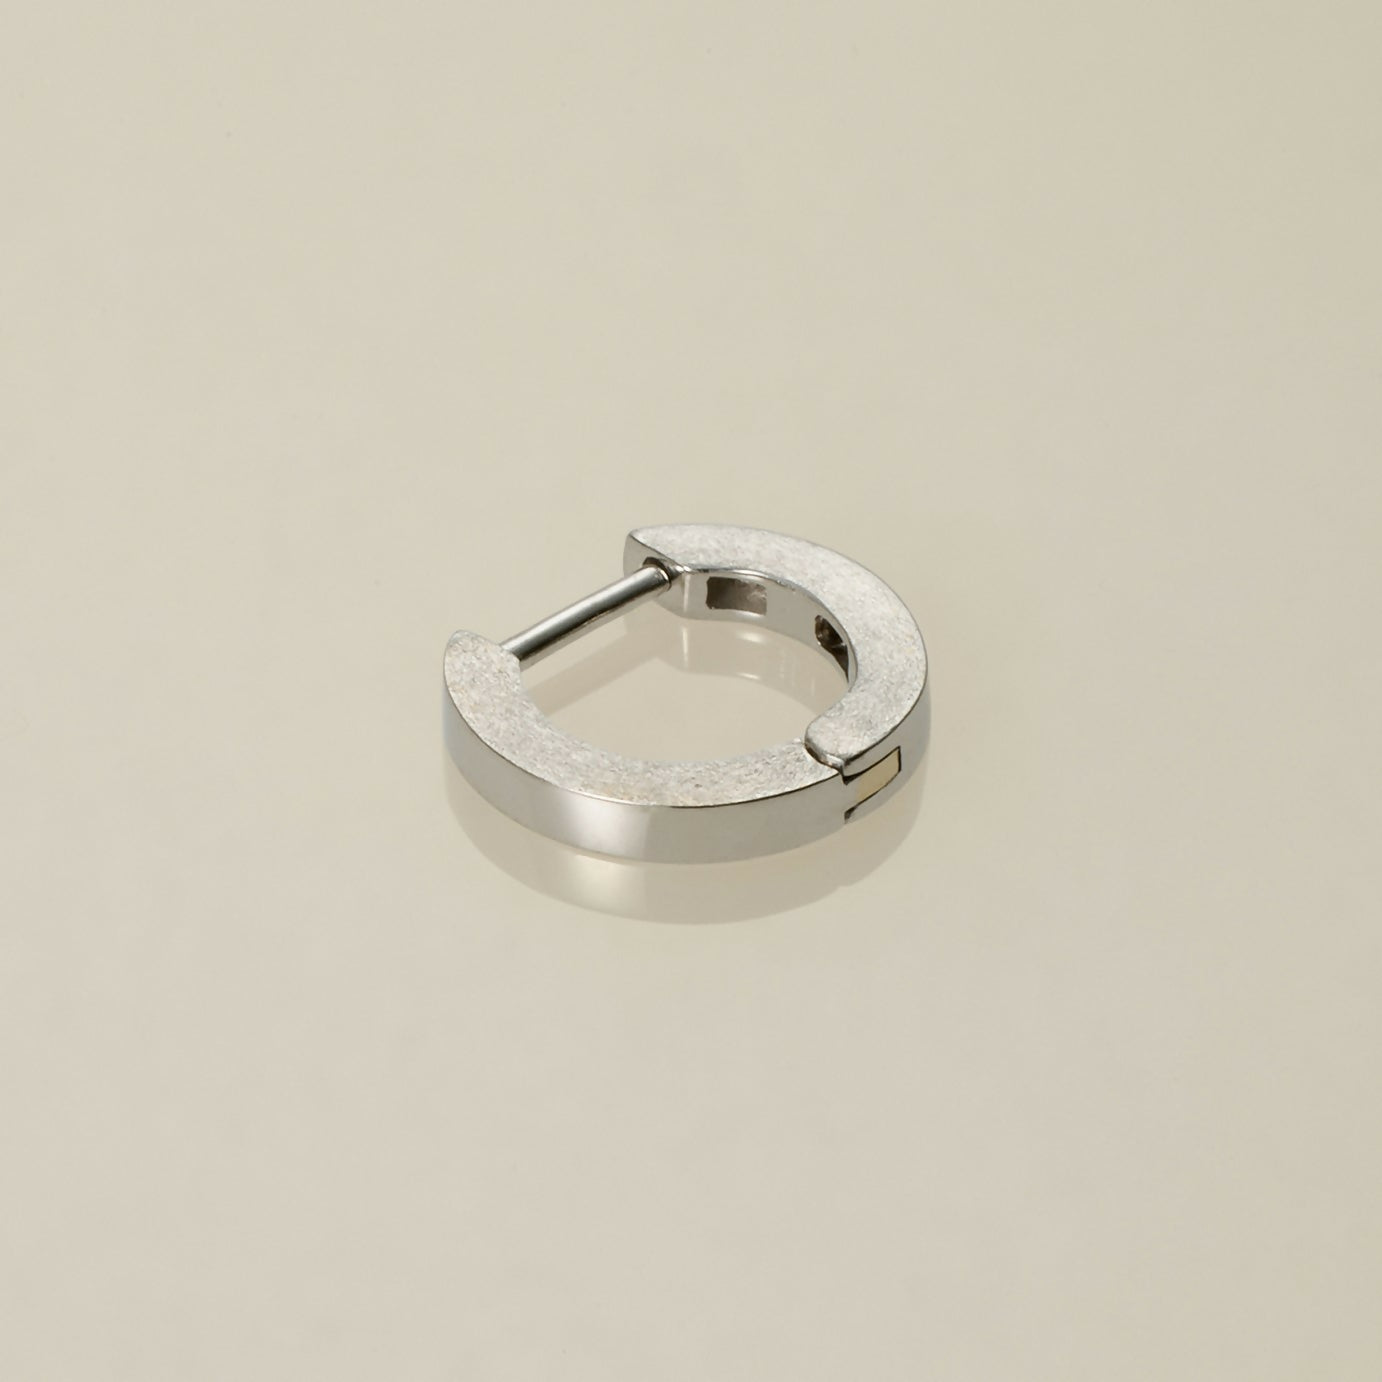 K10 フラット フープピアス：スモール / 10K flat hoop pierced earring - small